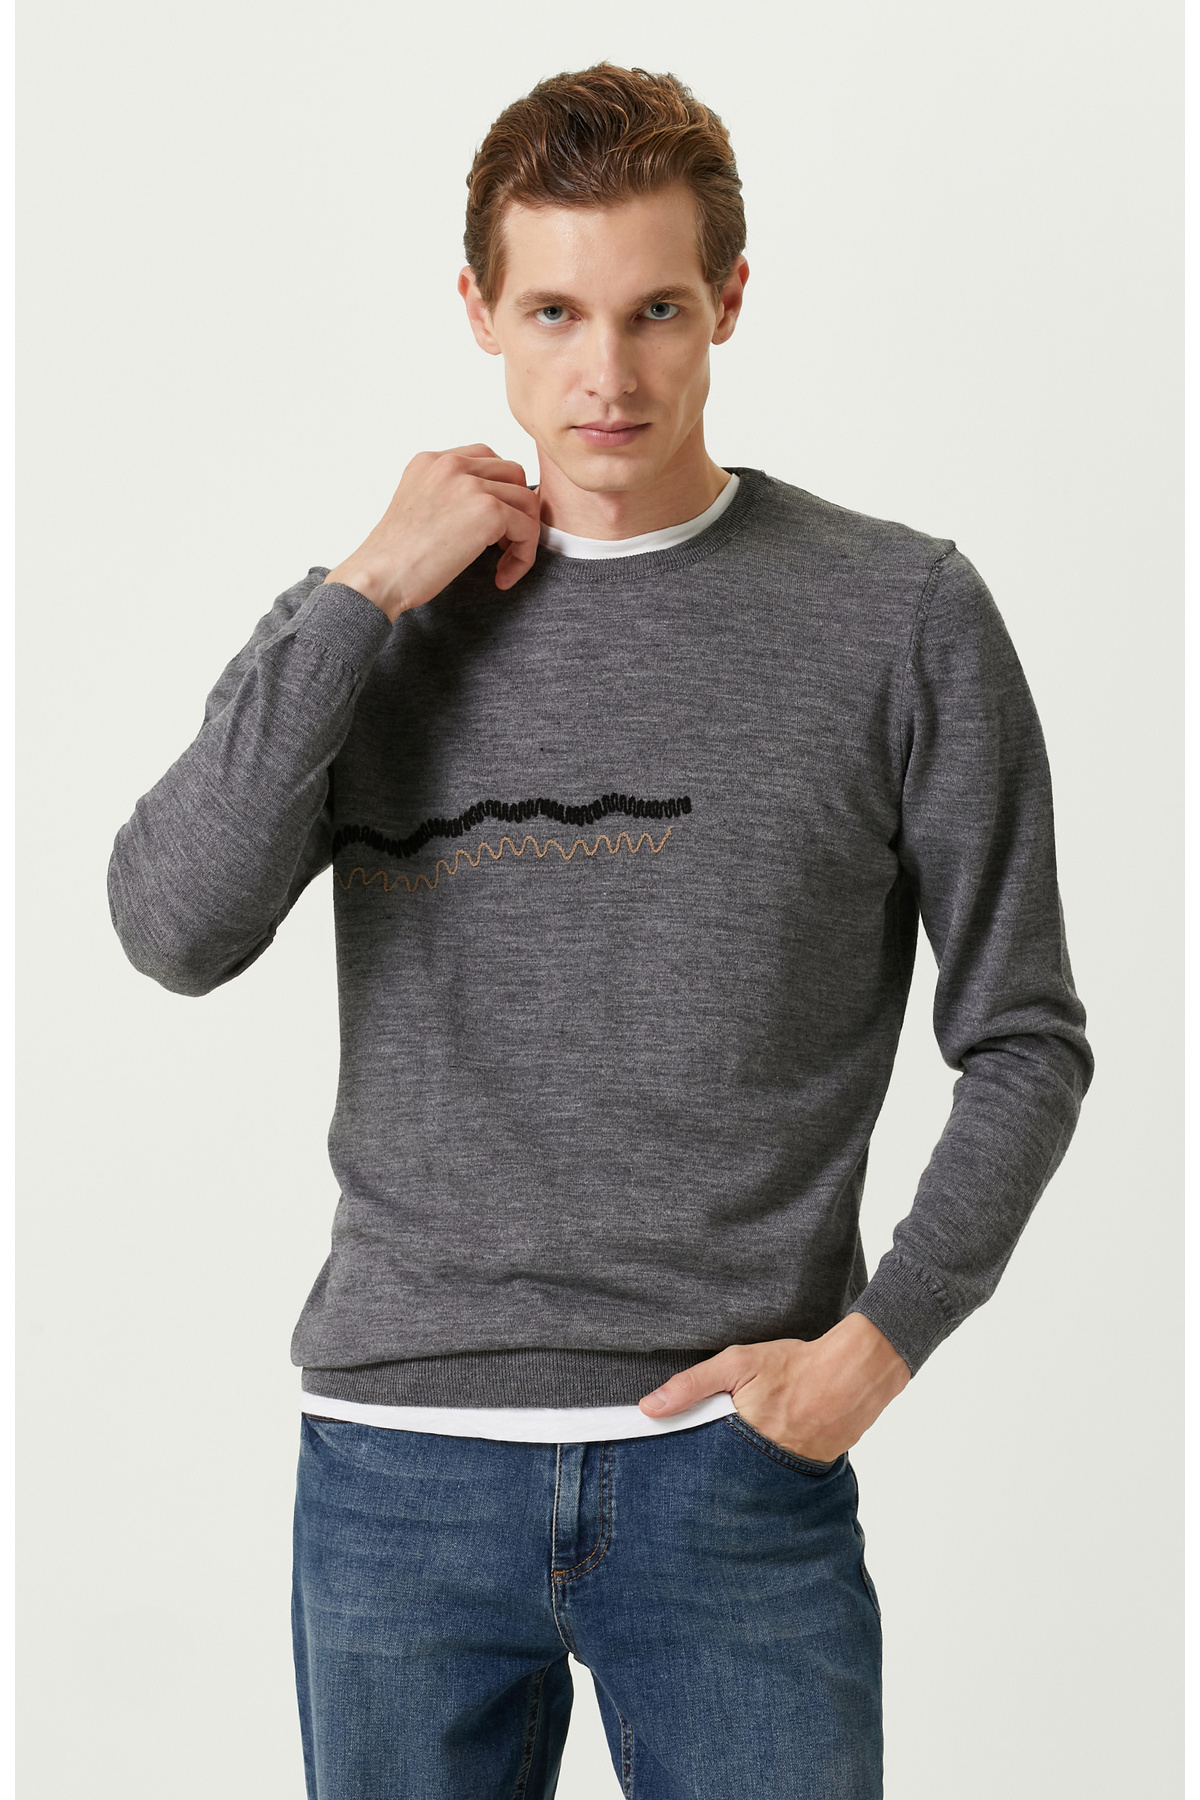 Серый свитер с детальной вышивкой Network, серый